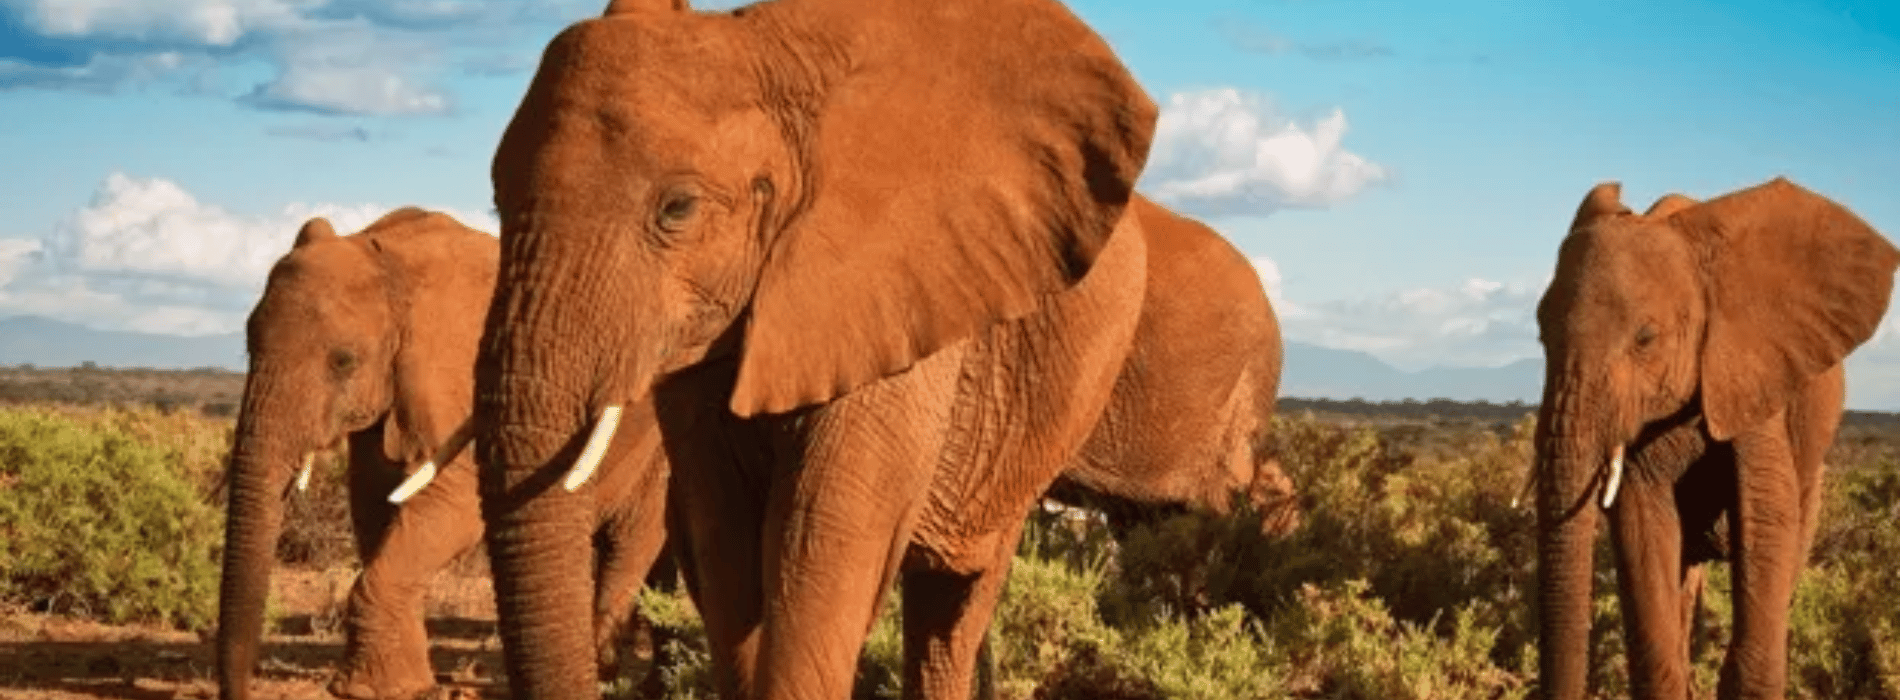 Symbolische Bedeutung des fernöstlichen Elefanten